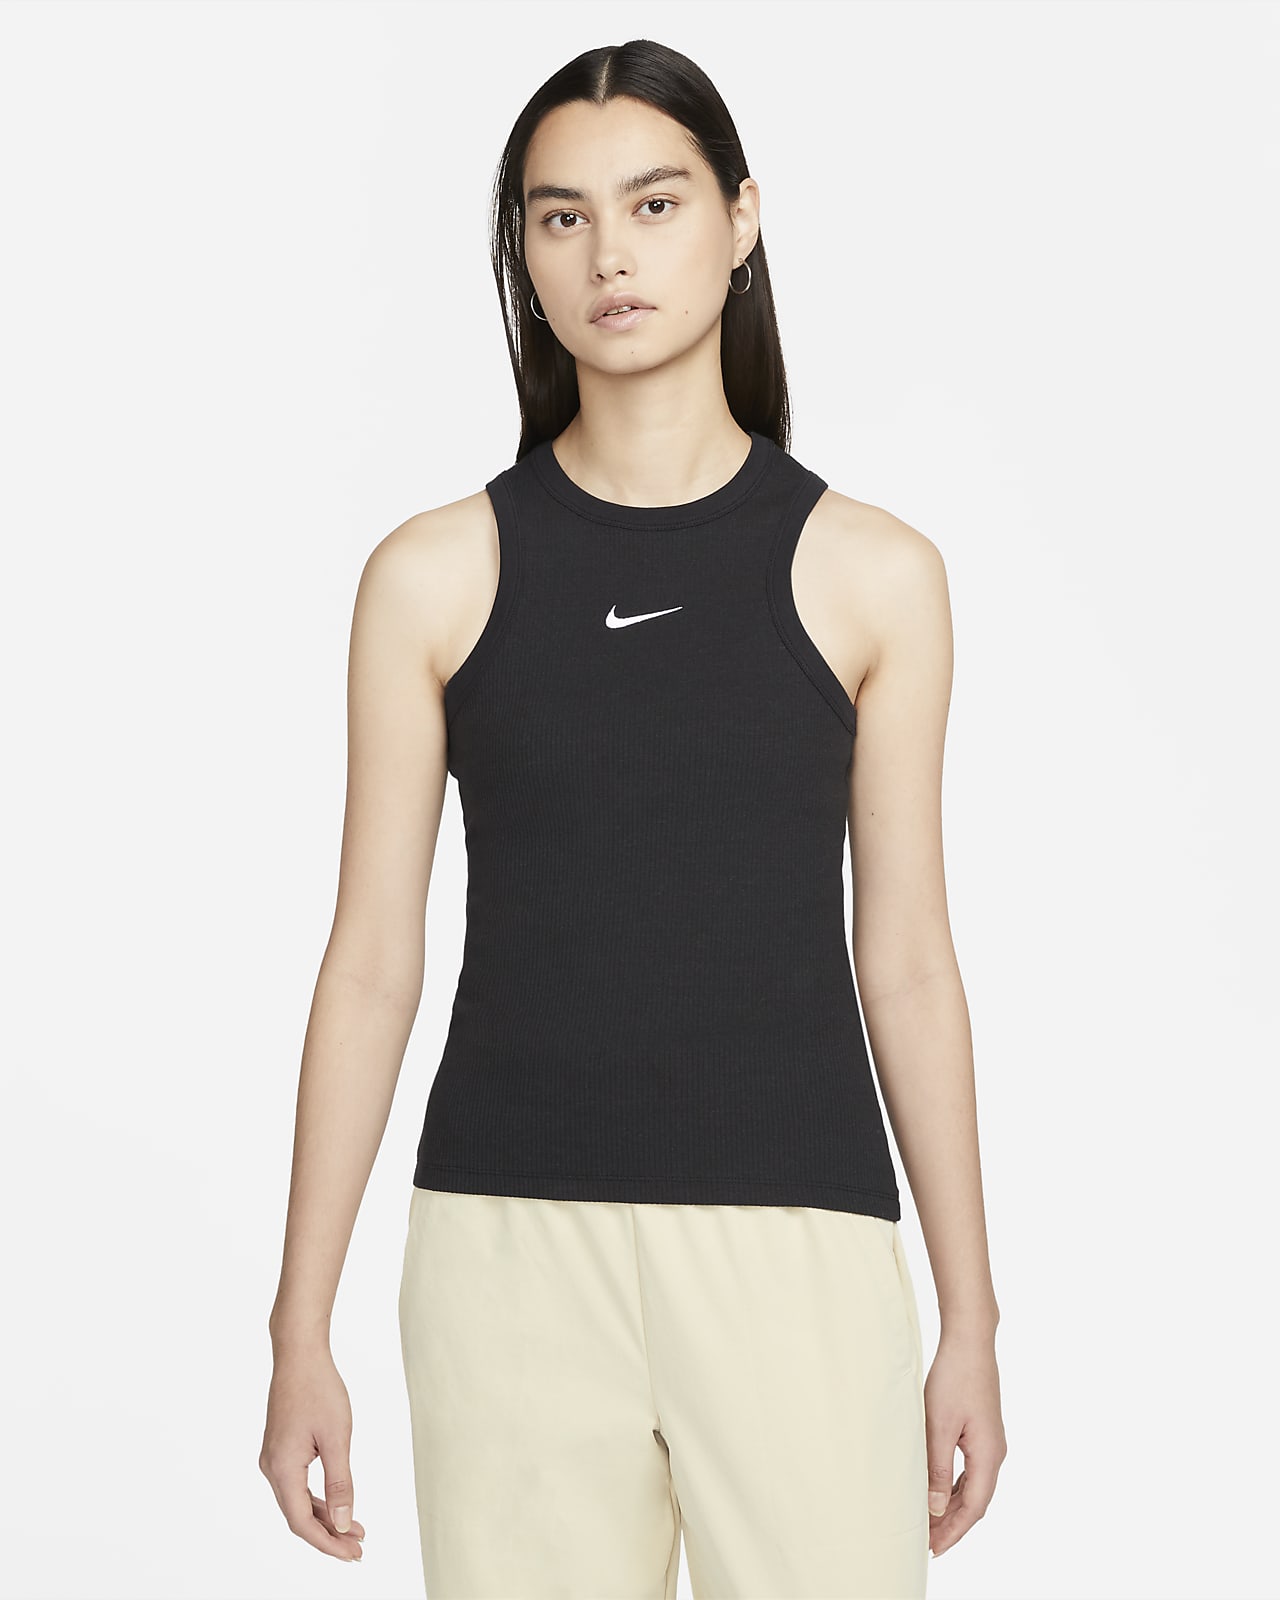 Heerlijk tweedehands Schrijf op Débardeur Nike Sportswear pour femme. Nike LU